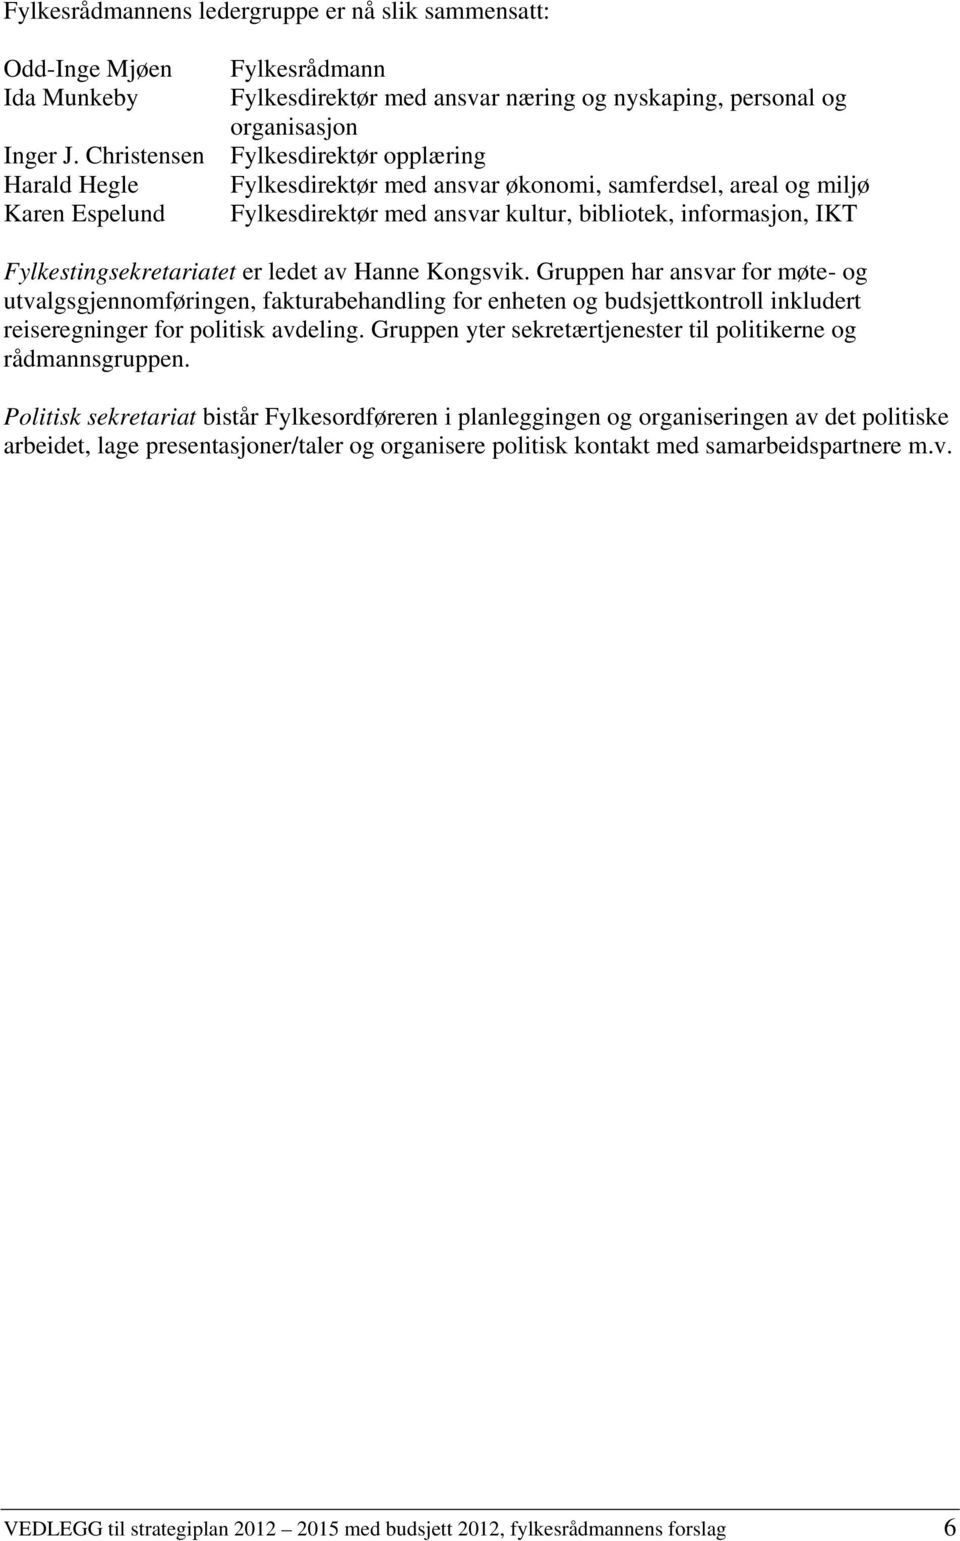 areal og miljø Fylkesdirektør med ansvar kultur, bibliotek, informasjon, IKT Fylkestingsekretariatet er ledet av Hanne Kongsvik.